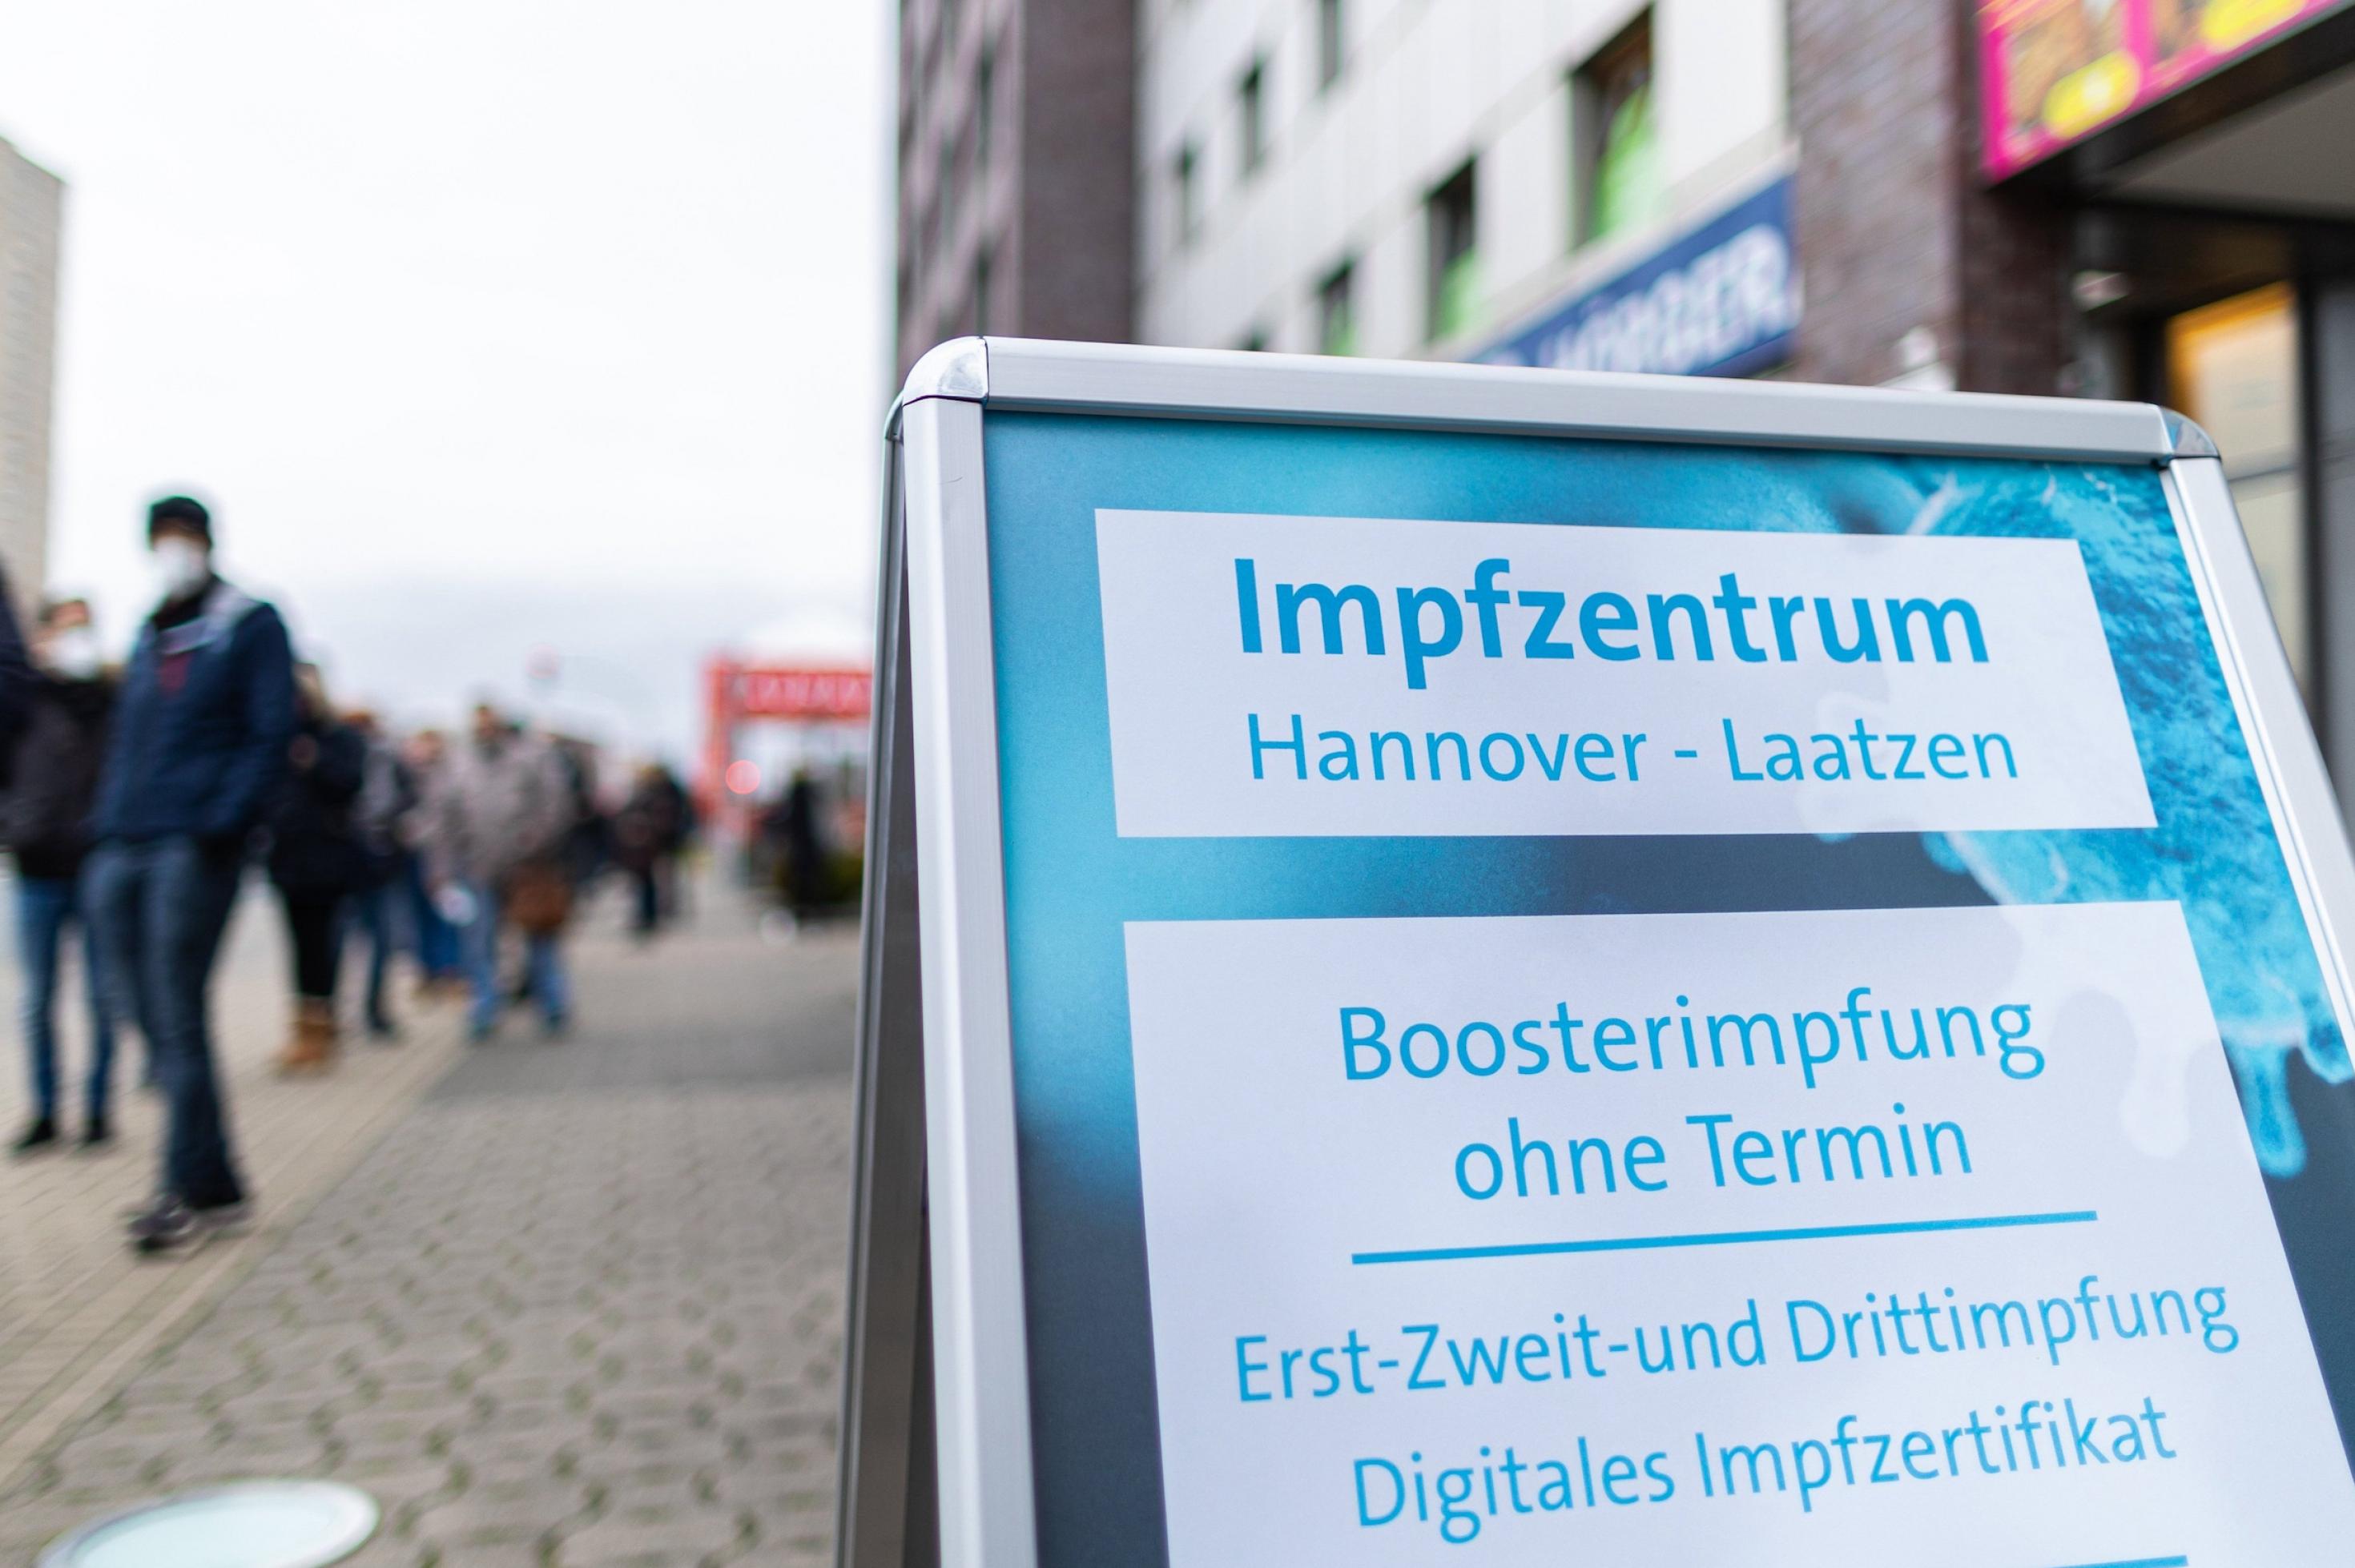 Menschen warten in einer langen Schlange vor dem Eingang zum Impfzentrum. Auf dem Schild werden Boosterimpfungen ohne Termin in Hannover angeboten.